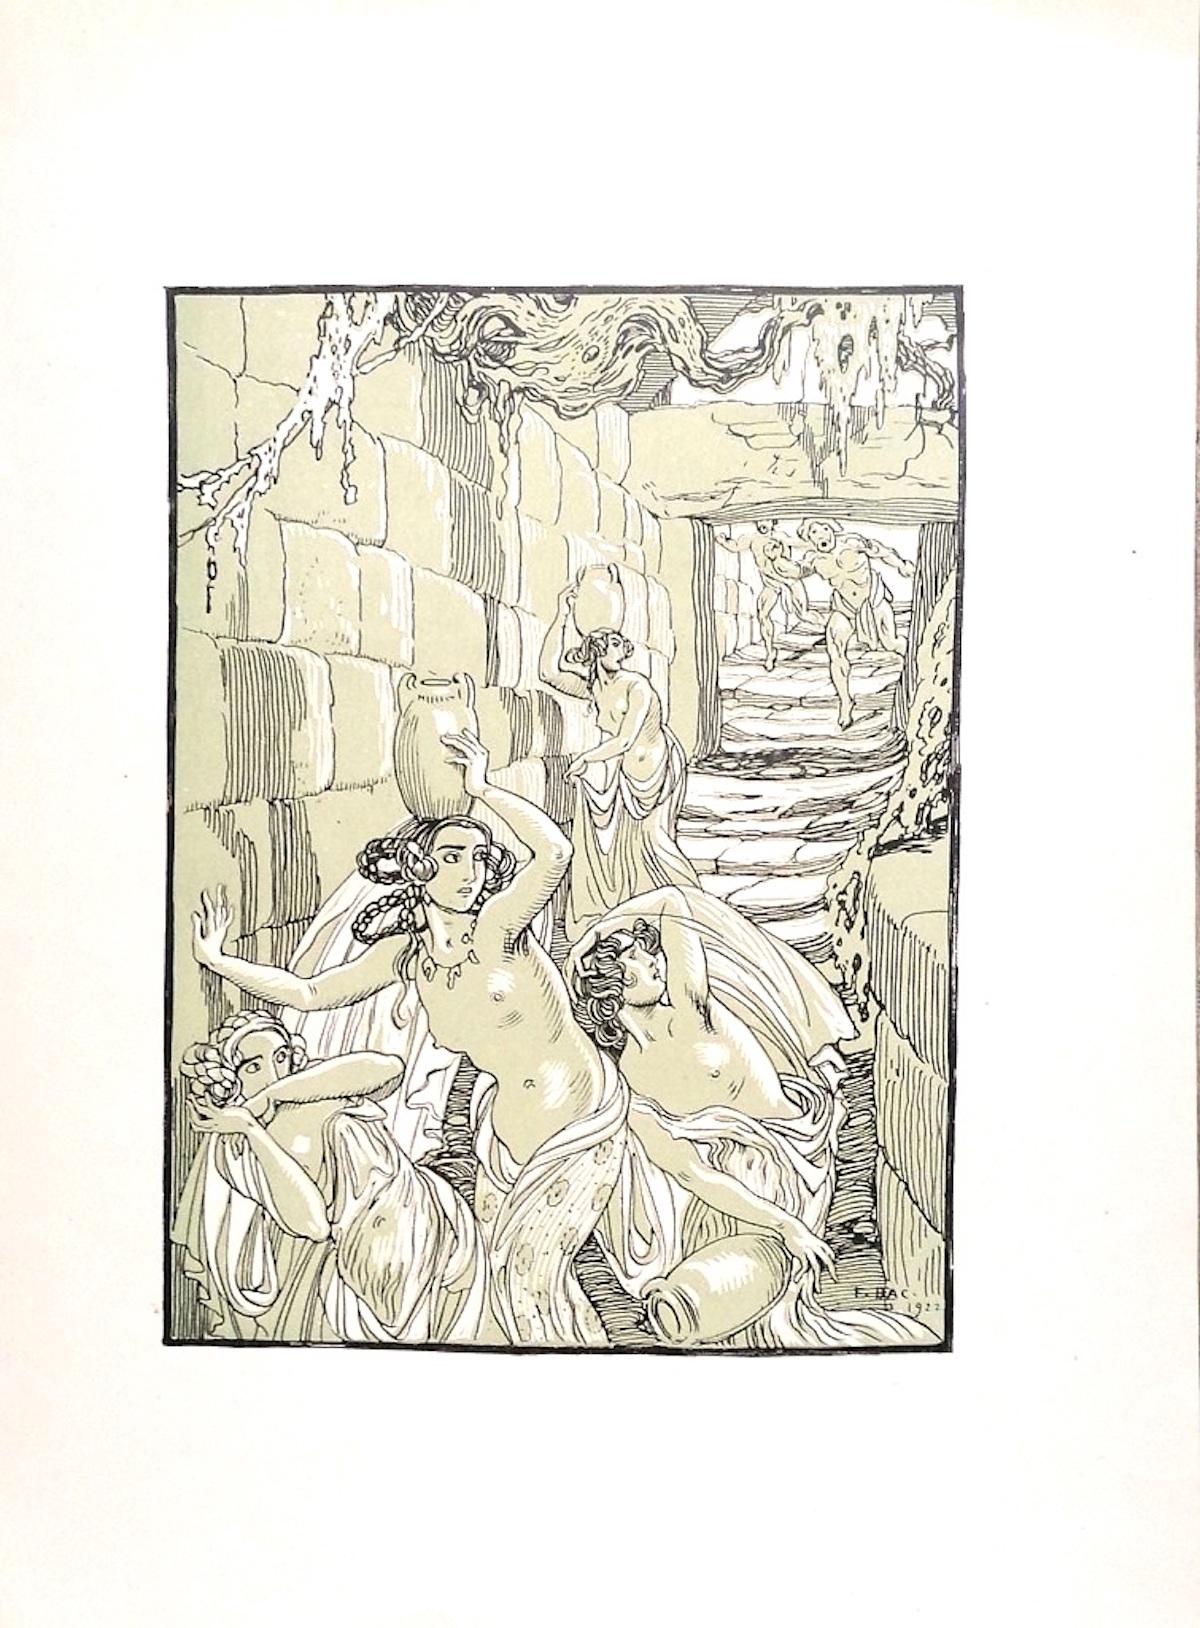 Die Flucht der Bacchantinnen ist ein originelles modernes Kunstwerk von Ferdinand Bac (1859 - 1952) aus dem Jahr 1922.

Signiert und datiert auf der Platte in der unteren rechten Ecke: F. Bac 1922.

Original-Lithographie auf